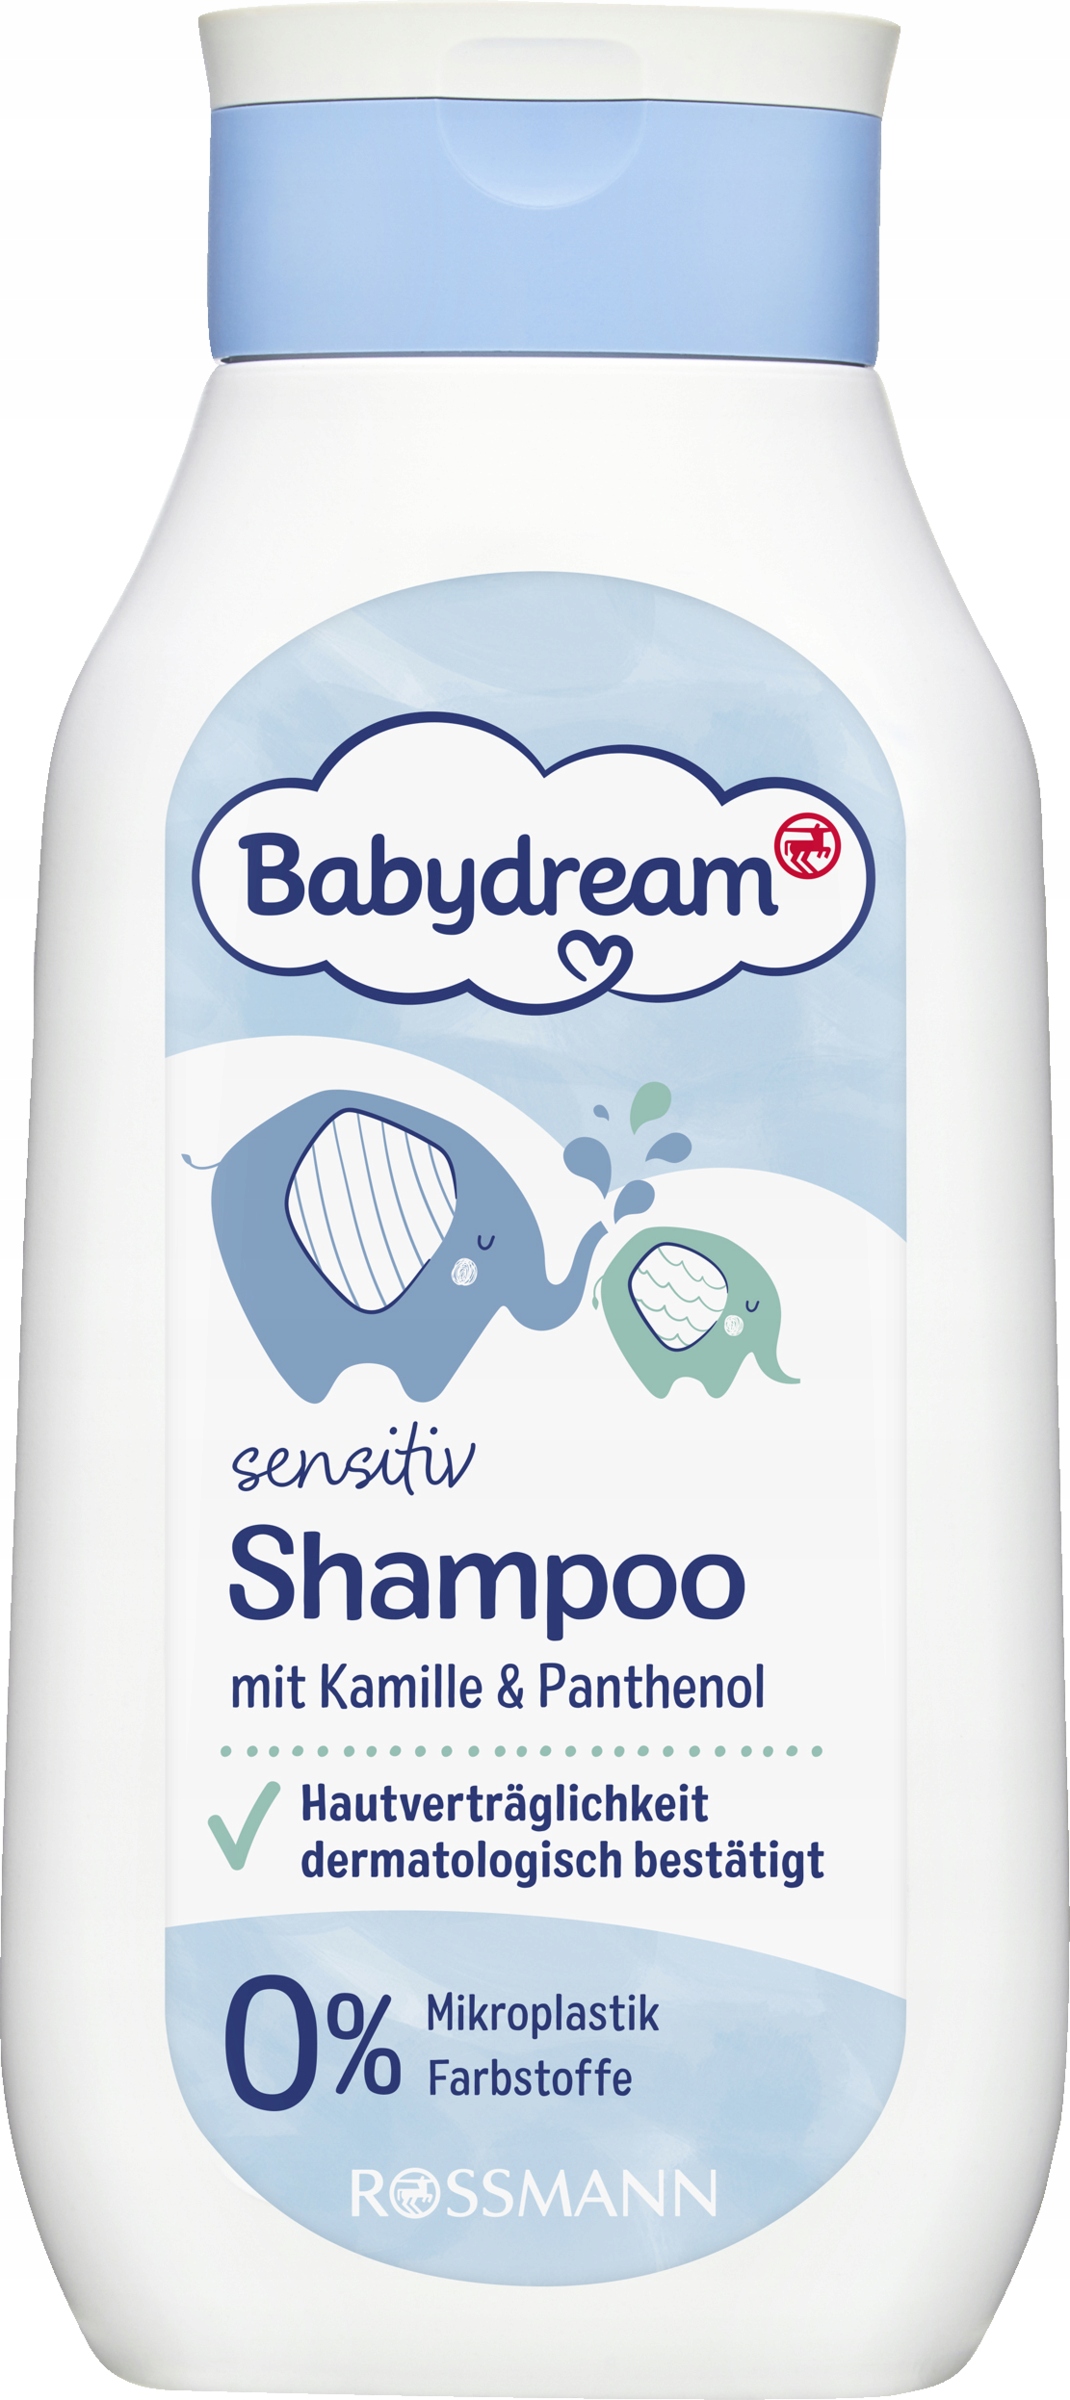 babydream szampon dzieci z kaczuszkami sklep